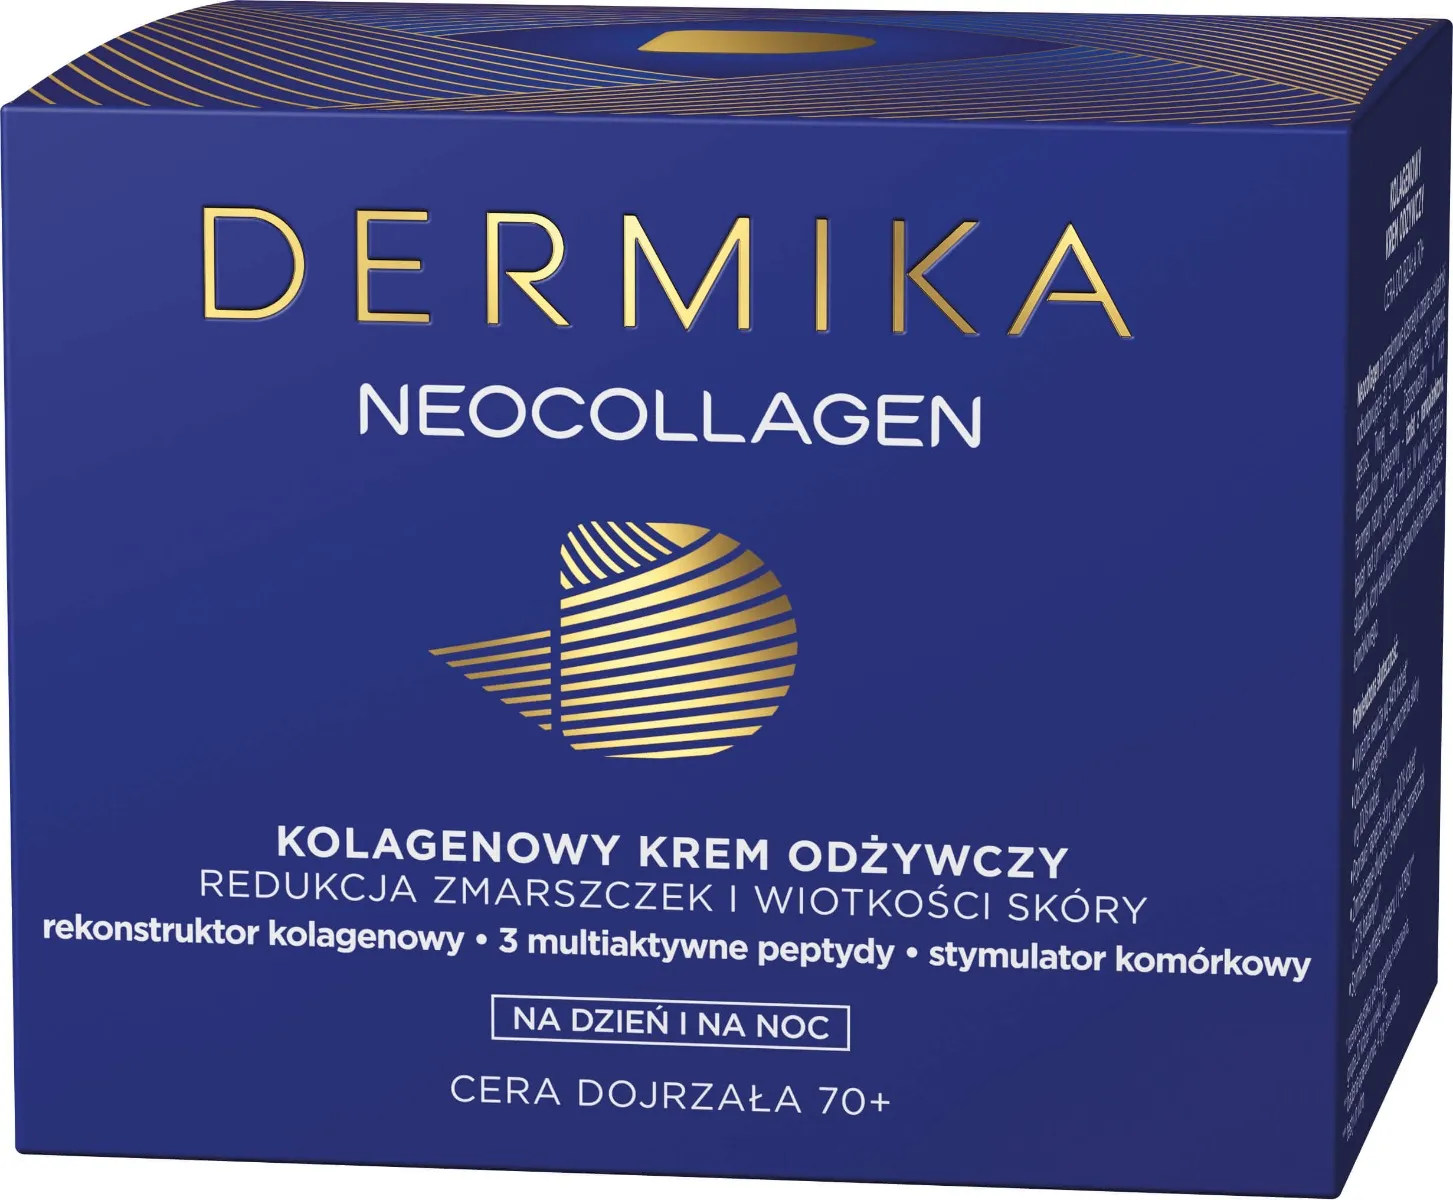 Dermika Neocollagen 70+, odżywczy krem redukujący zmarszczki na dzień/noc, 50ml